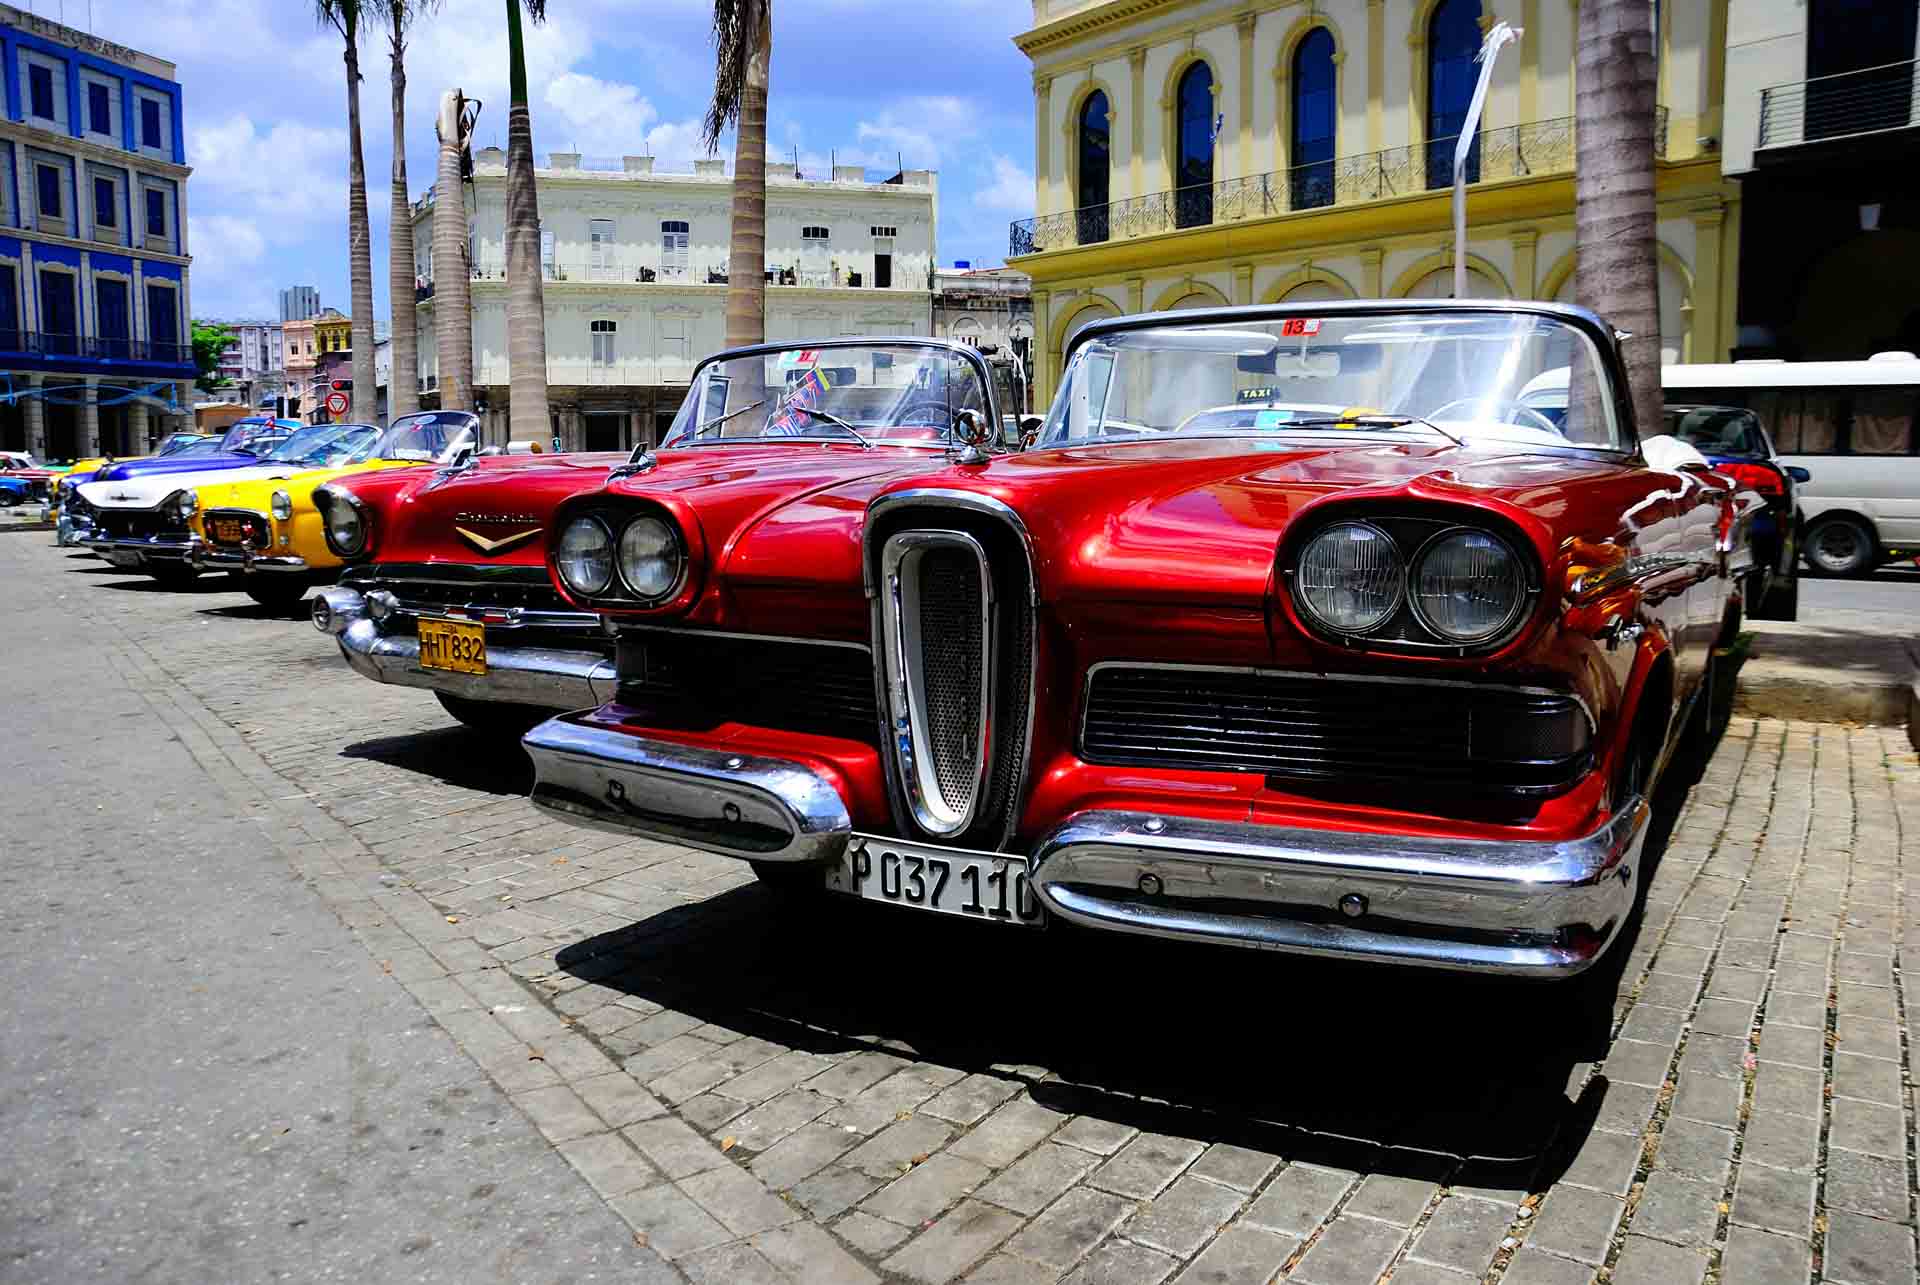 Havana Cuba Vintage Car 1, havana, cuba, pescart, photo blog, travel blog, blog, photo travel blog, enrico pescantini, pescantini